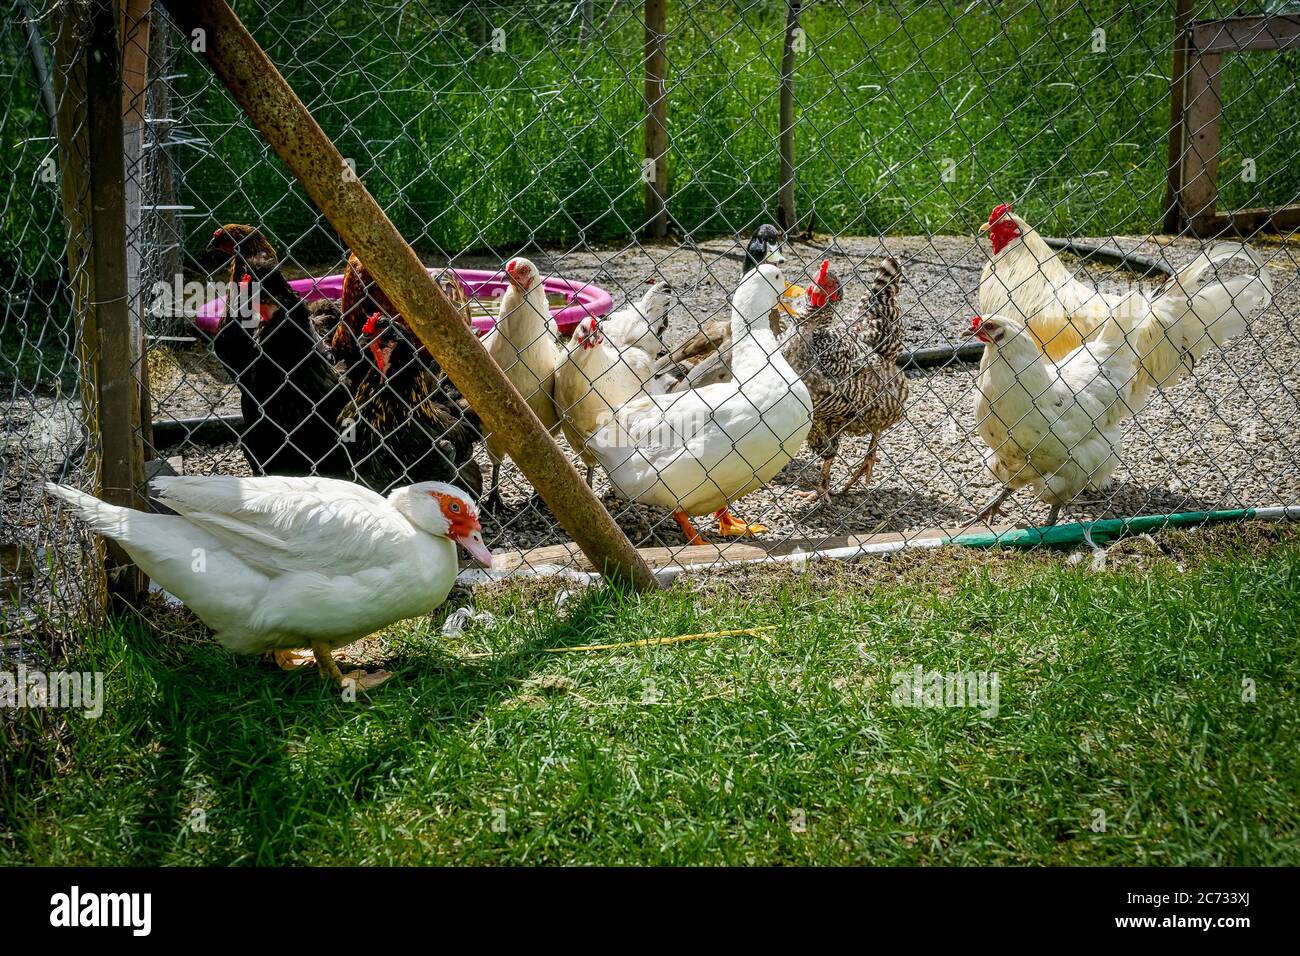 Barnyard, ducks, chickens Stock Photo